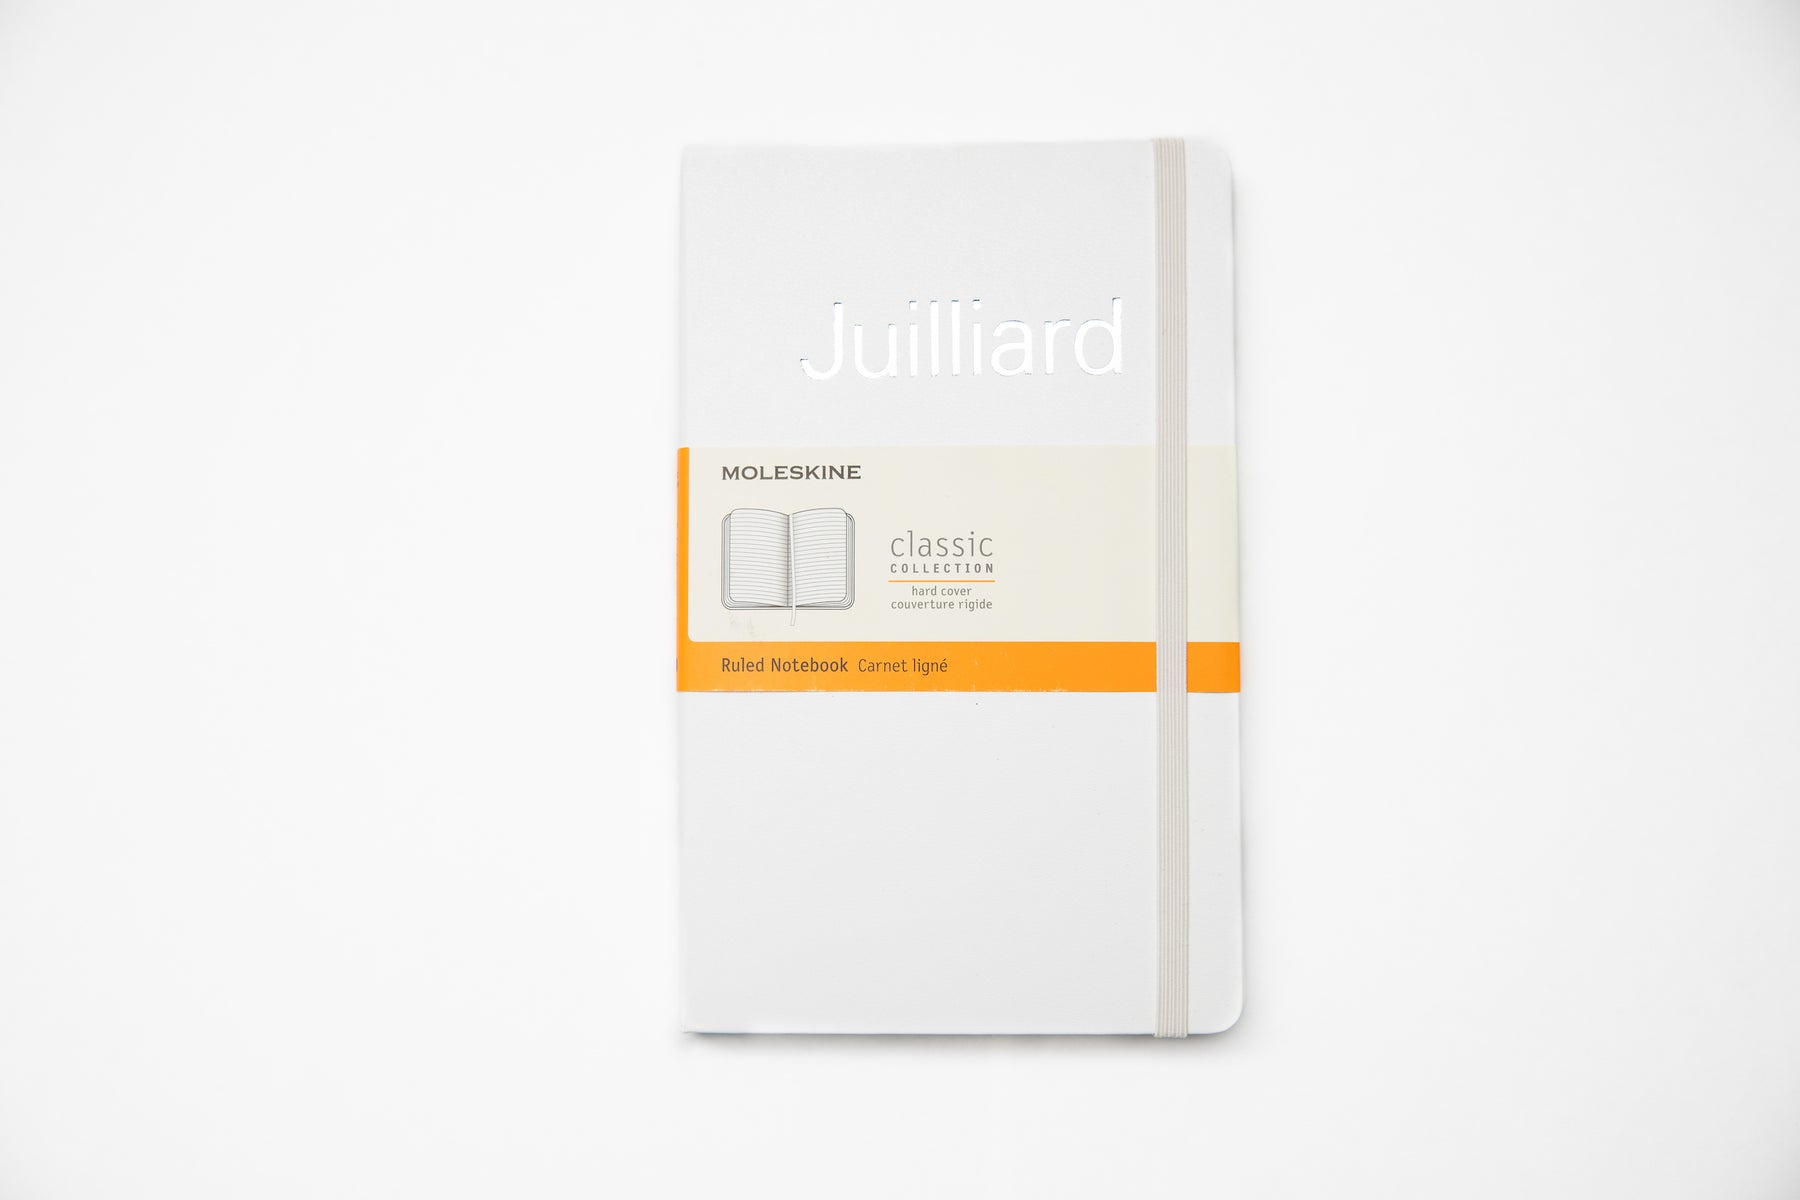 Moleskine: Juilliard Ruled Notebook Large (5" x 8.25")